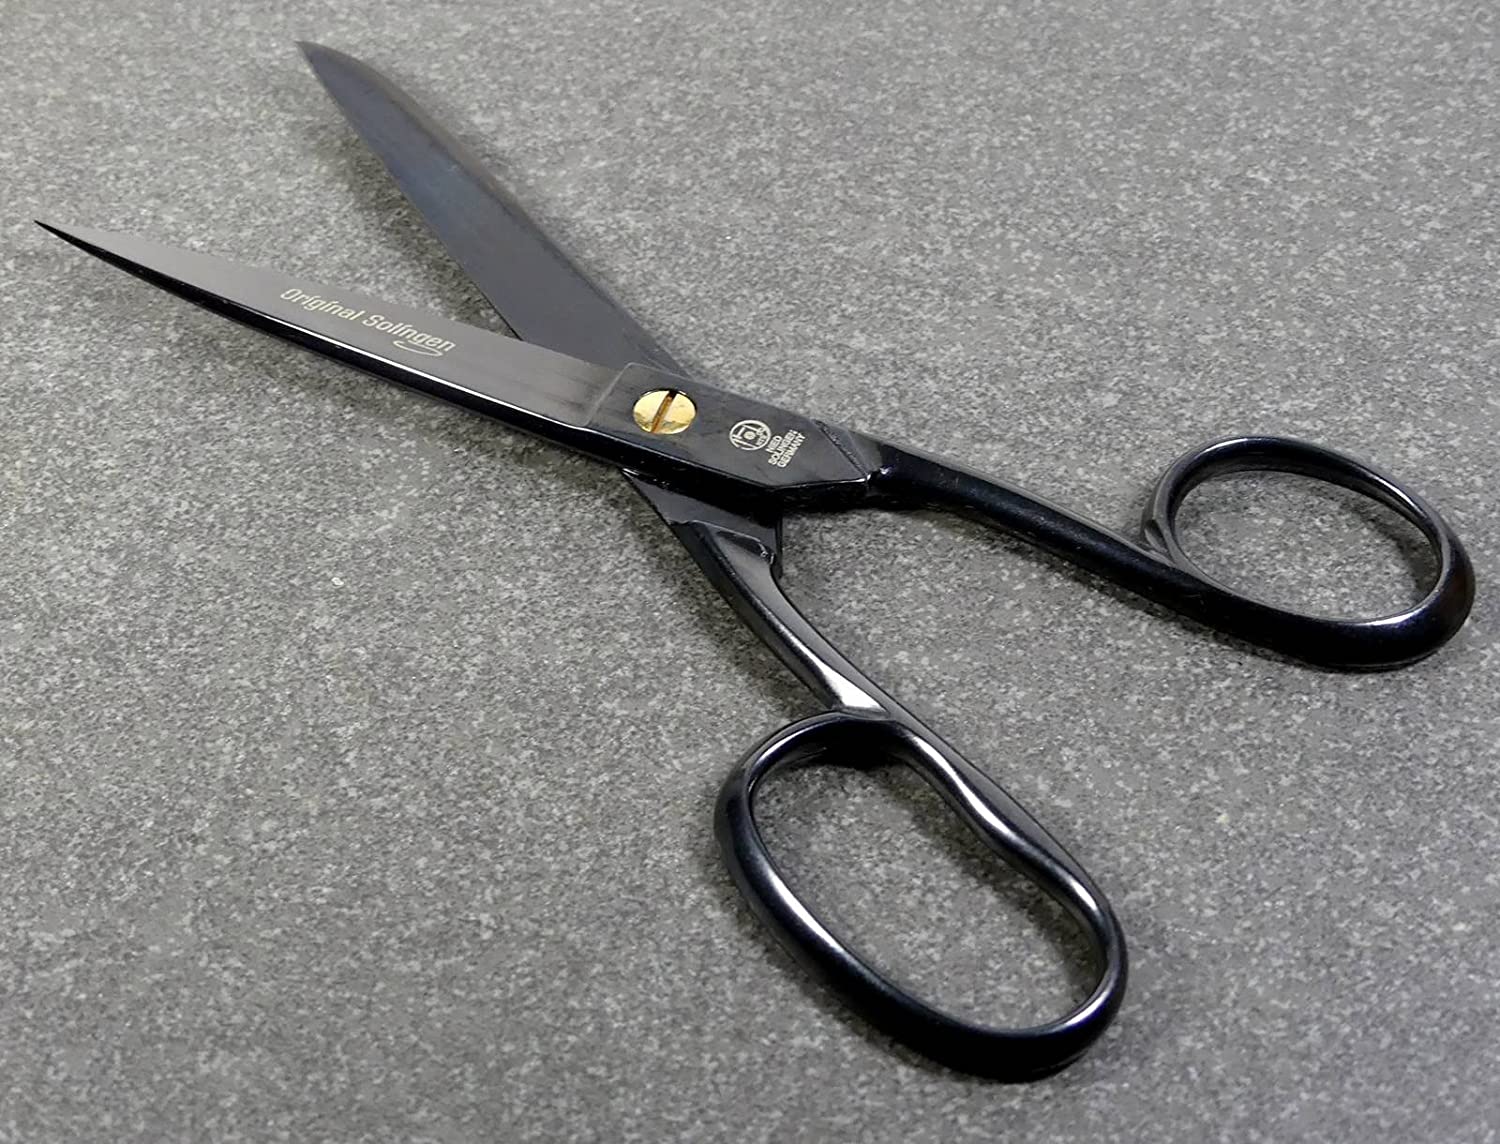 BLACK EDITION kitchen scissors, total length 18cm